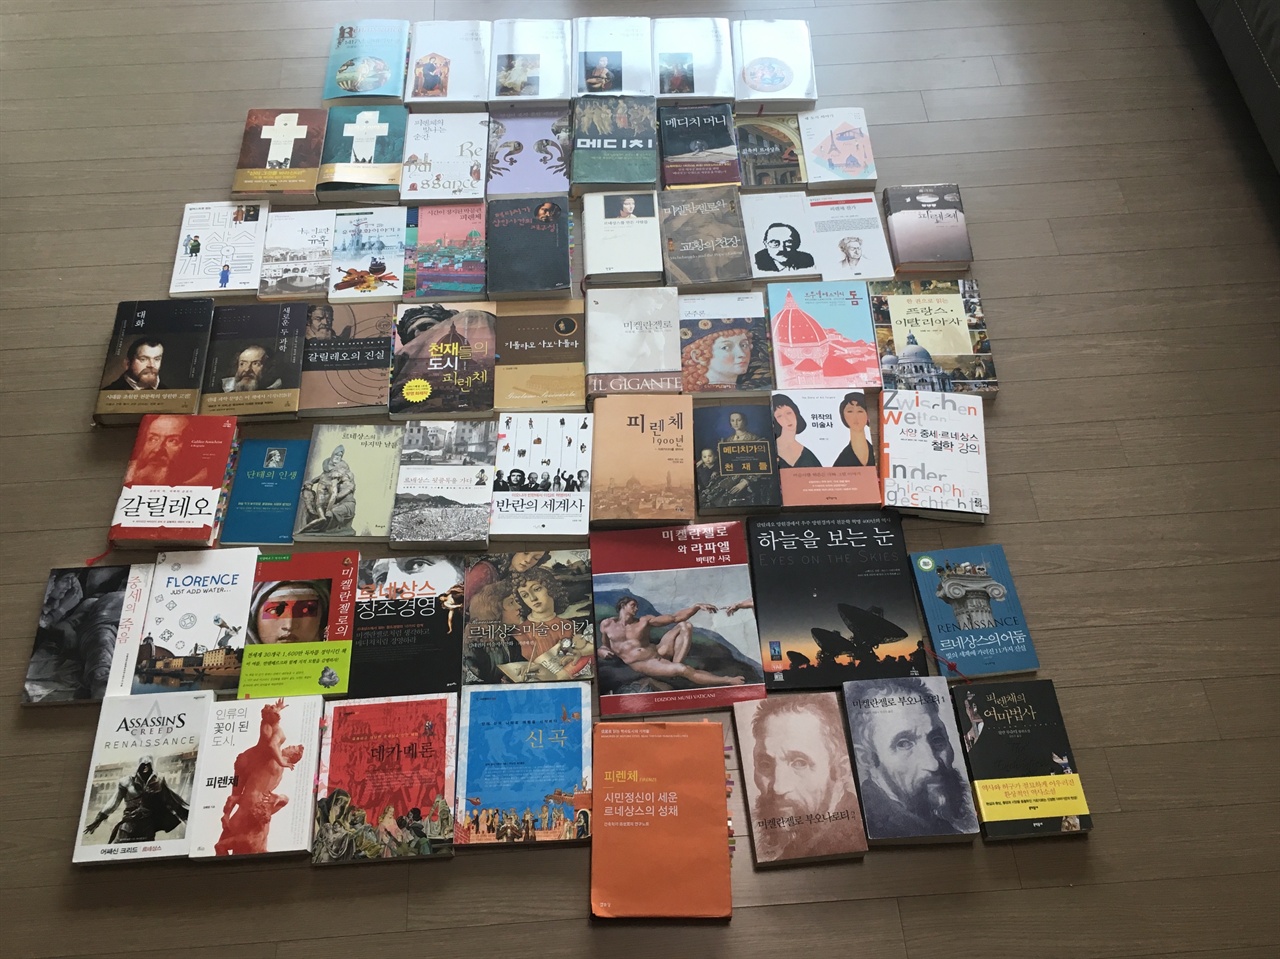    2014년부터 모은 책들이다. 지금은 60권을 훌쩍 넘어섰다.